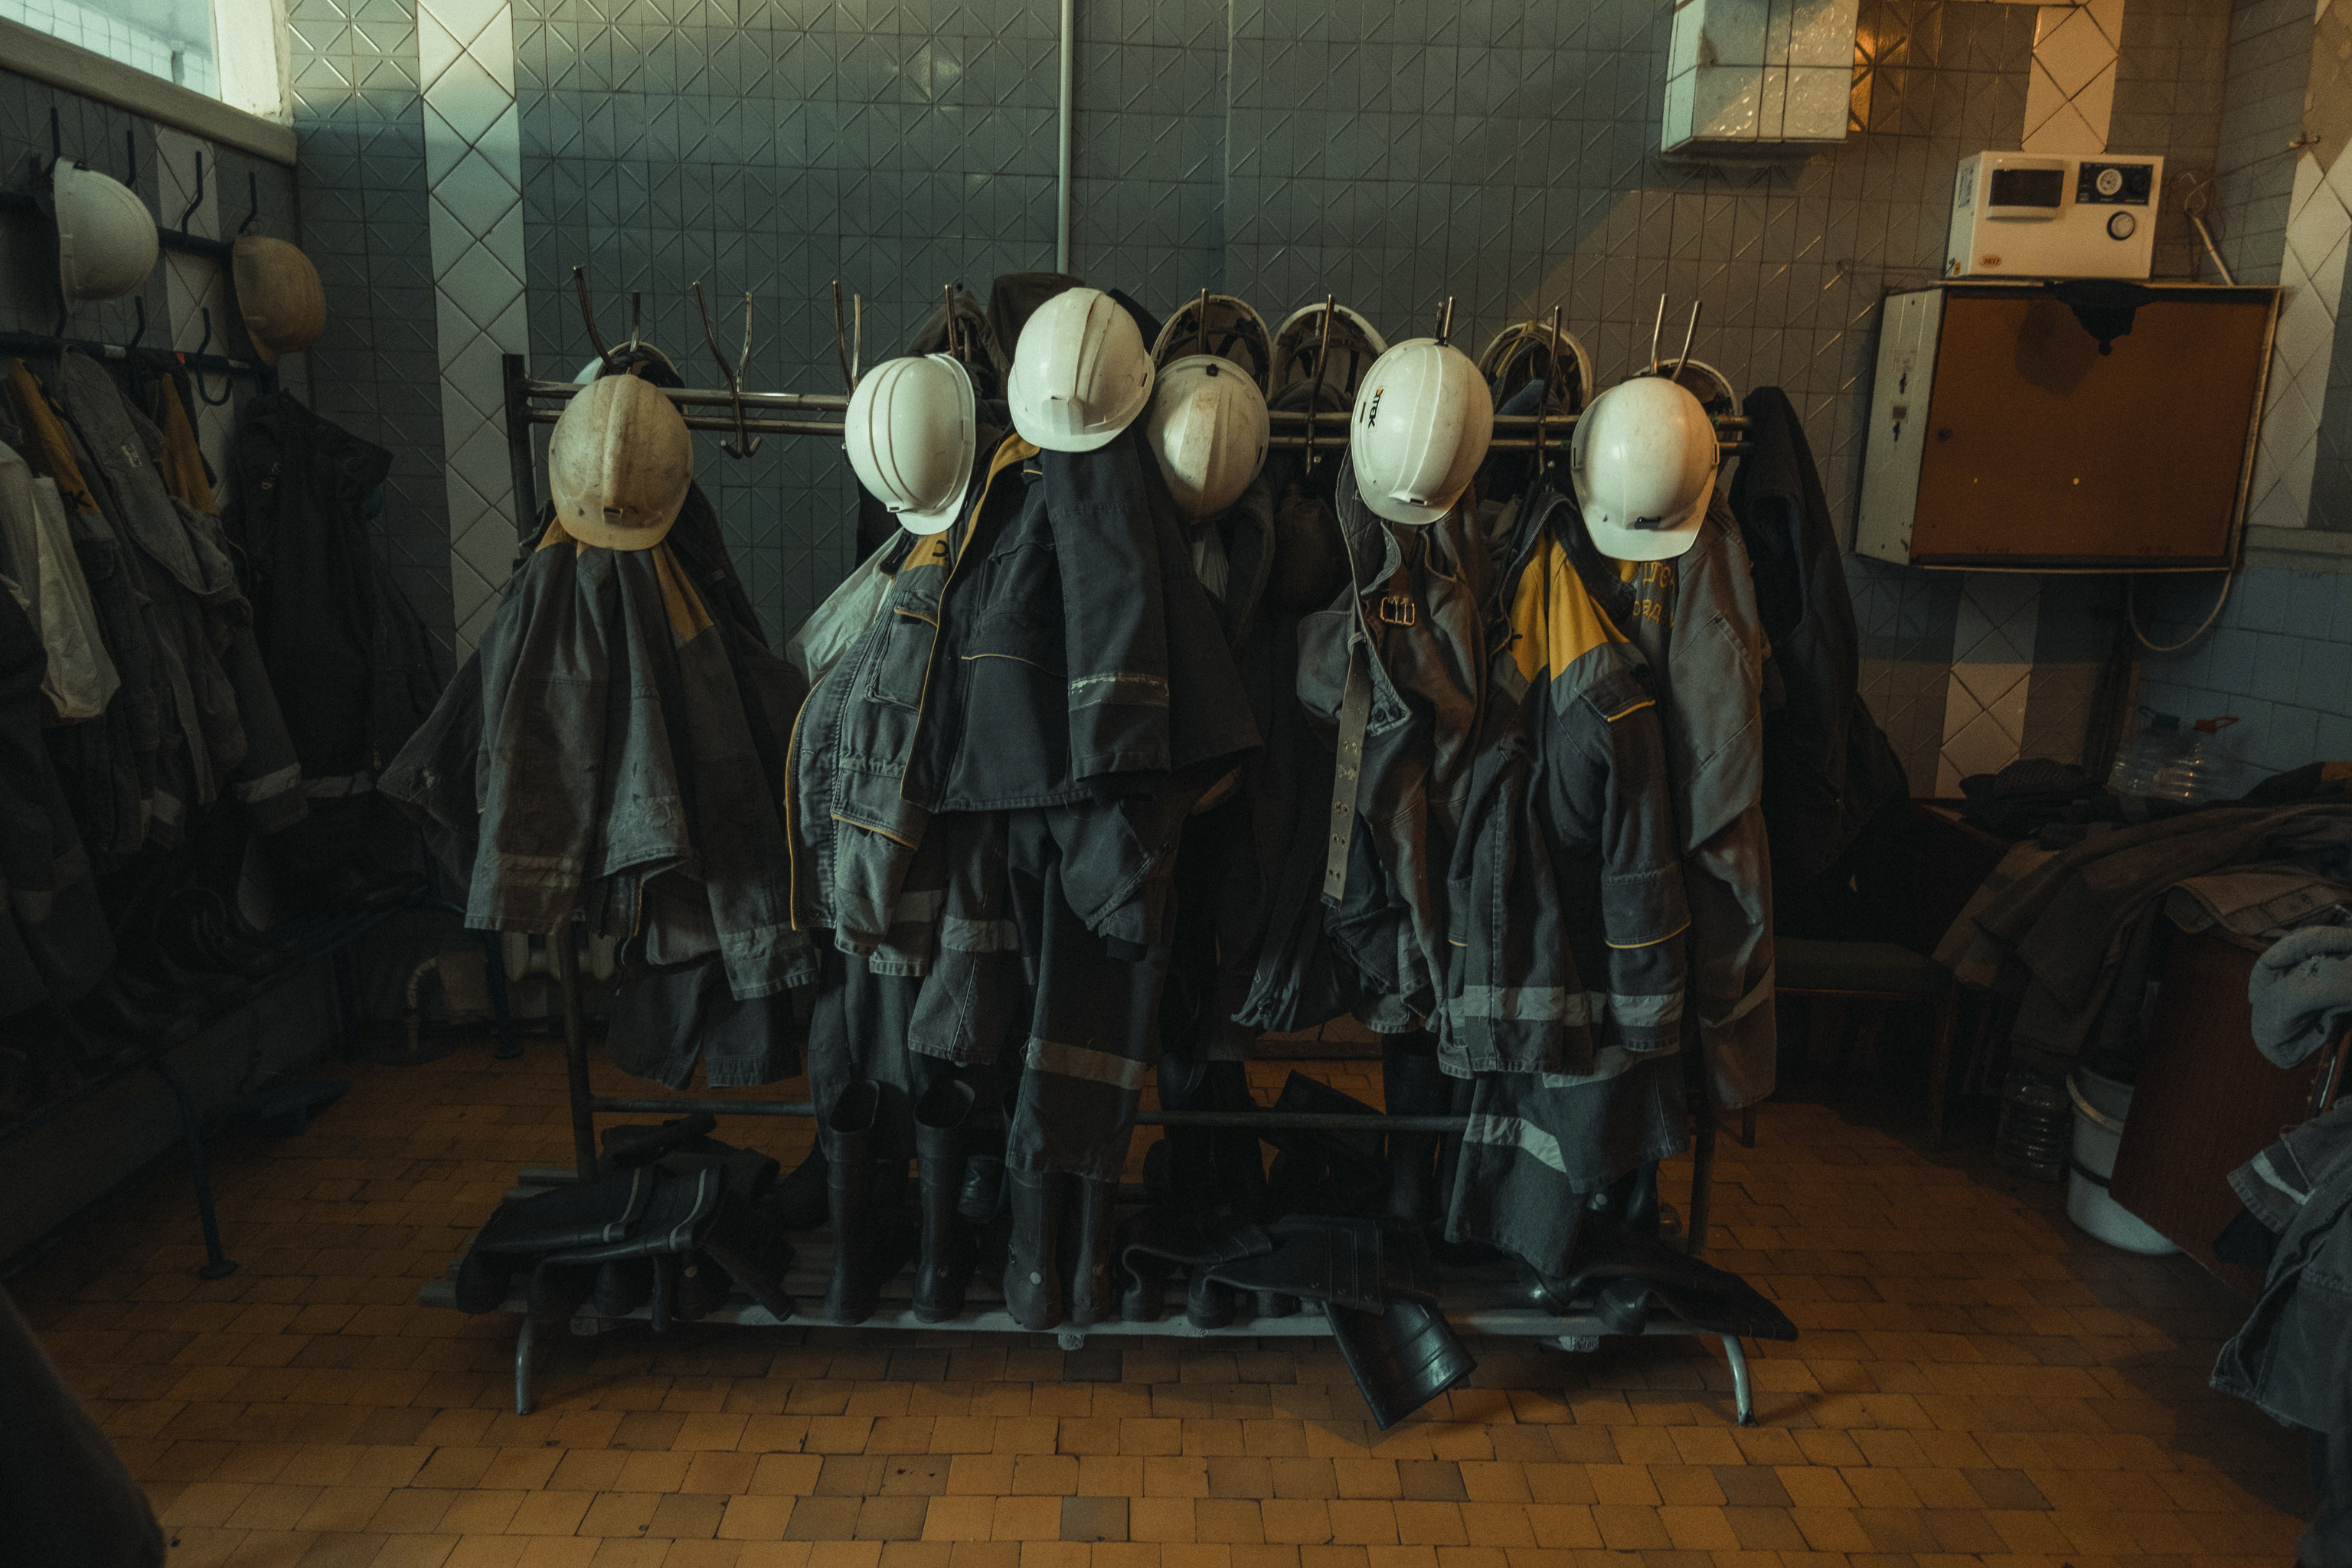 Los uniformes de los mineros.